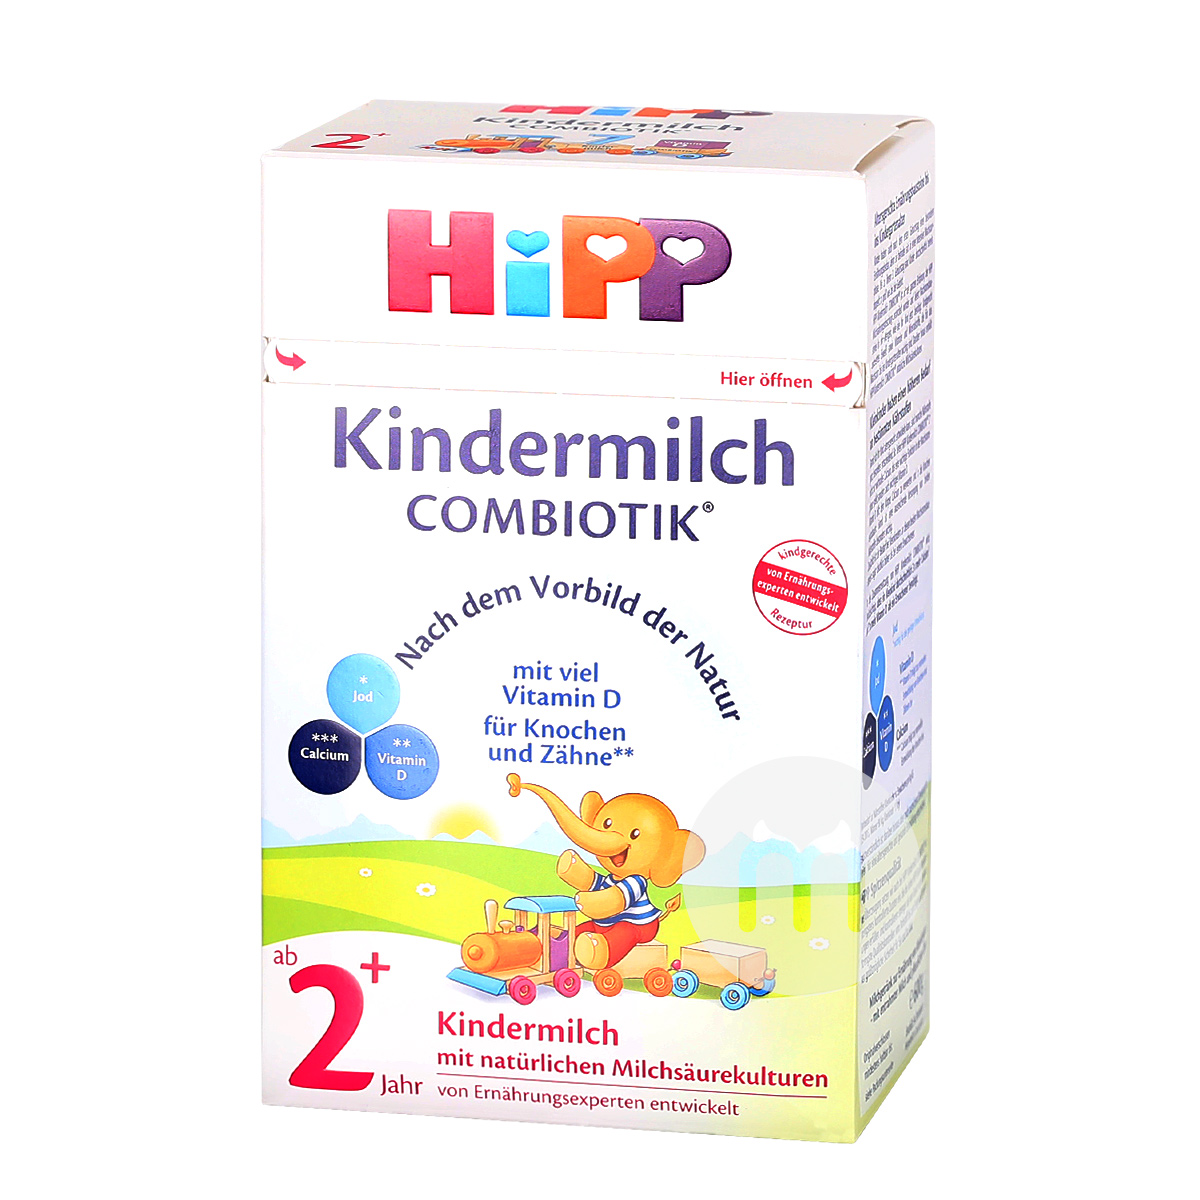 HiPPドイツ喜宝益生菌粉ミルク5段*8箱